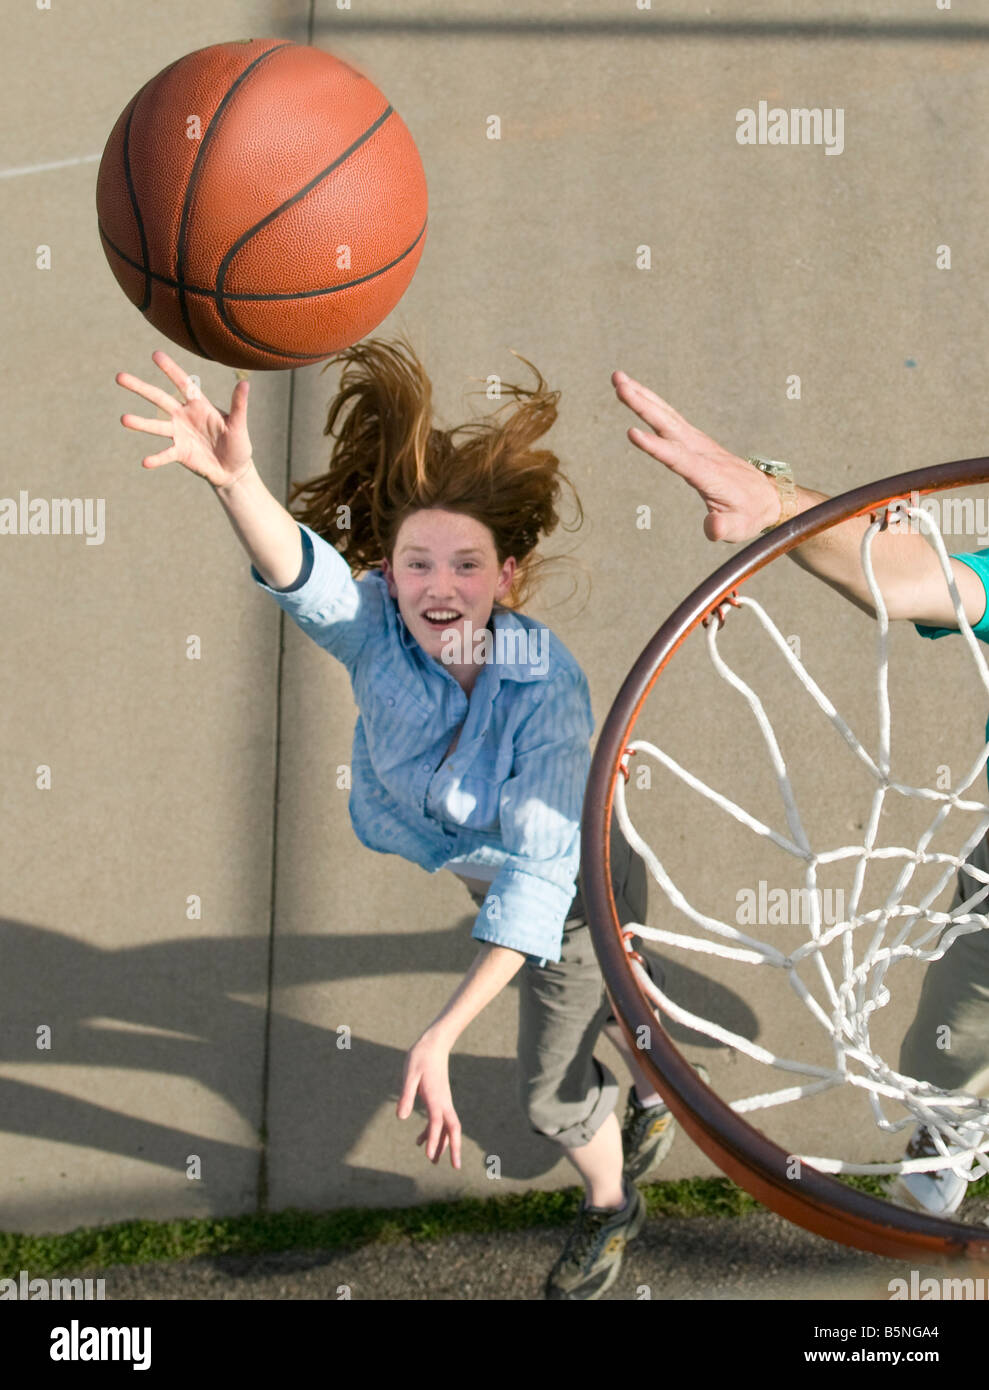 woman playing basketball outdoors shooting basket Stock Photo